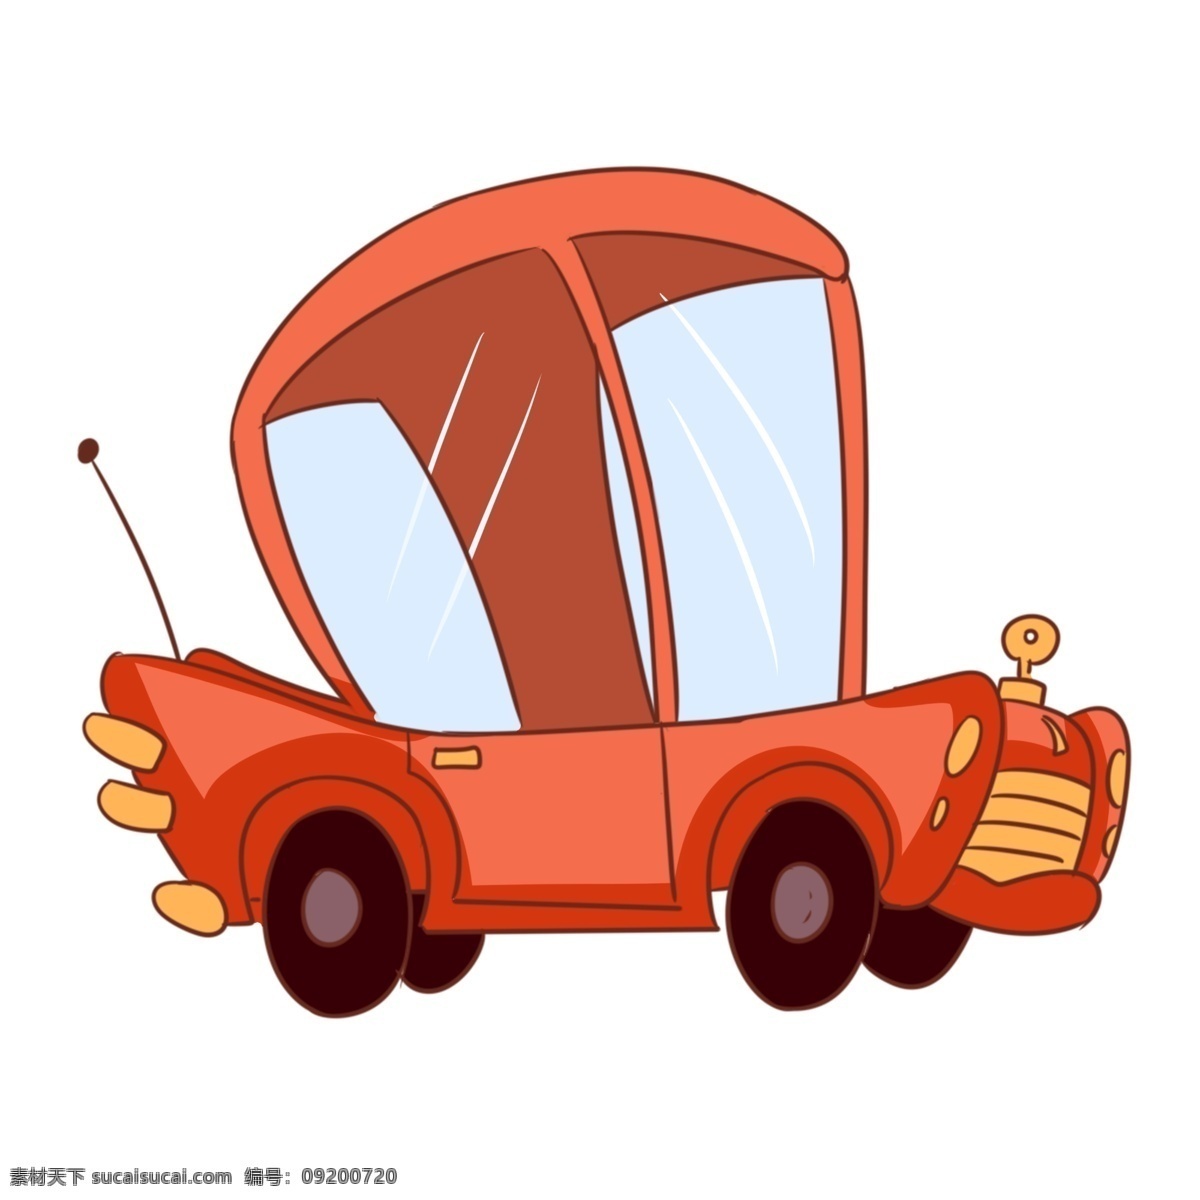 汽车 轿车 卡通 插画 卡通插画 汽车插画 代步工具 汽车轿车 载人汽车 红色的汽车 漂亮的汽车